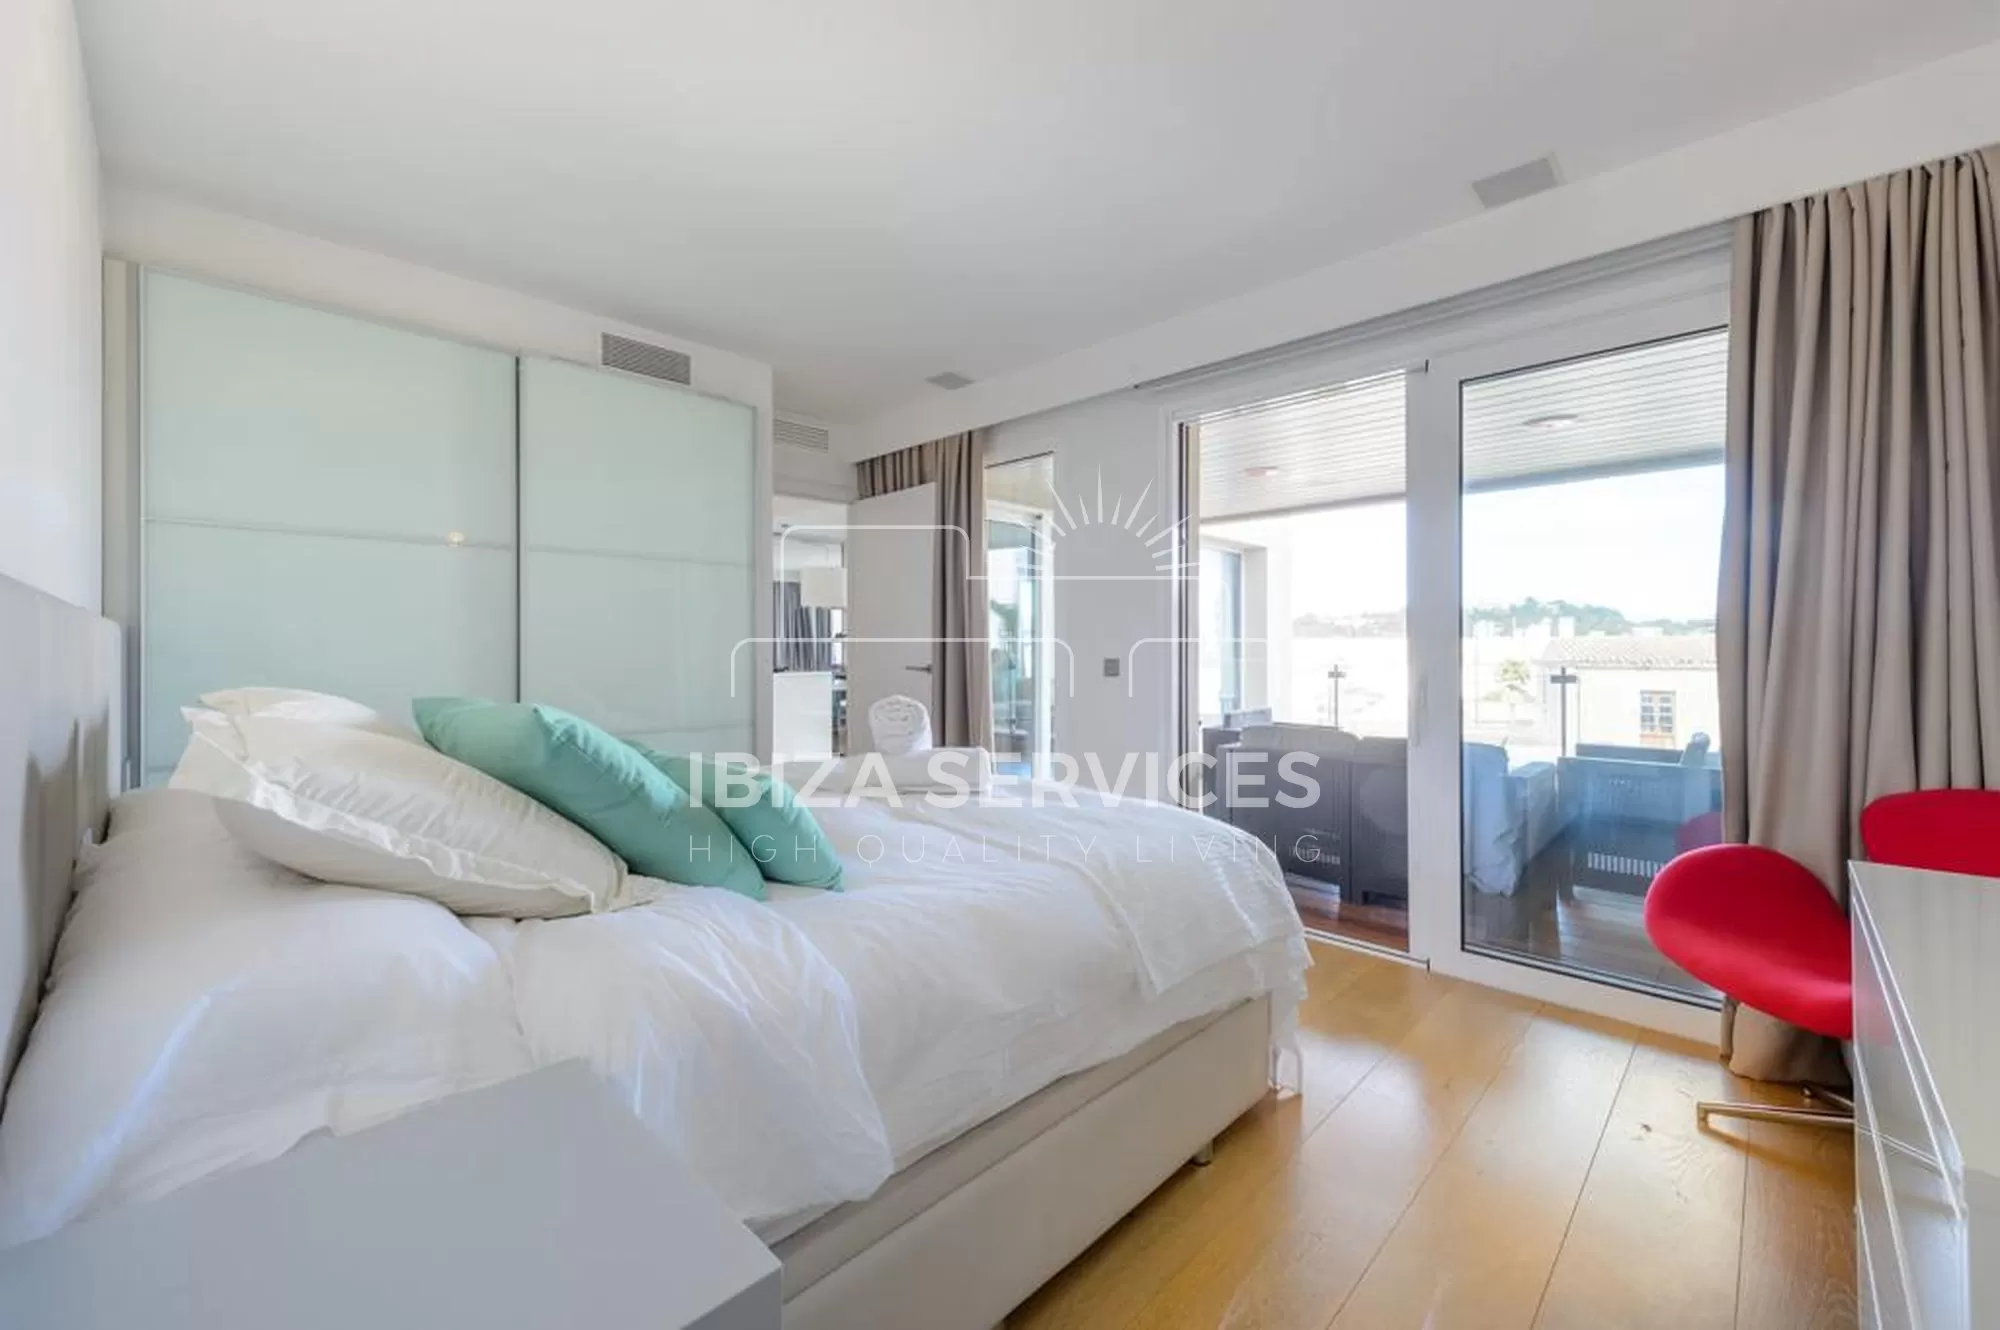 Luxurious 2-Bedroom Seasonal Rental at Sa Marina Ibiza